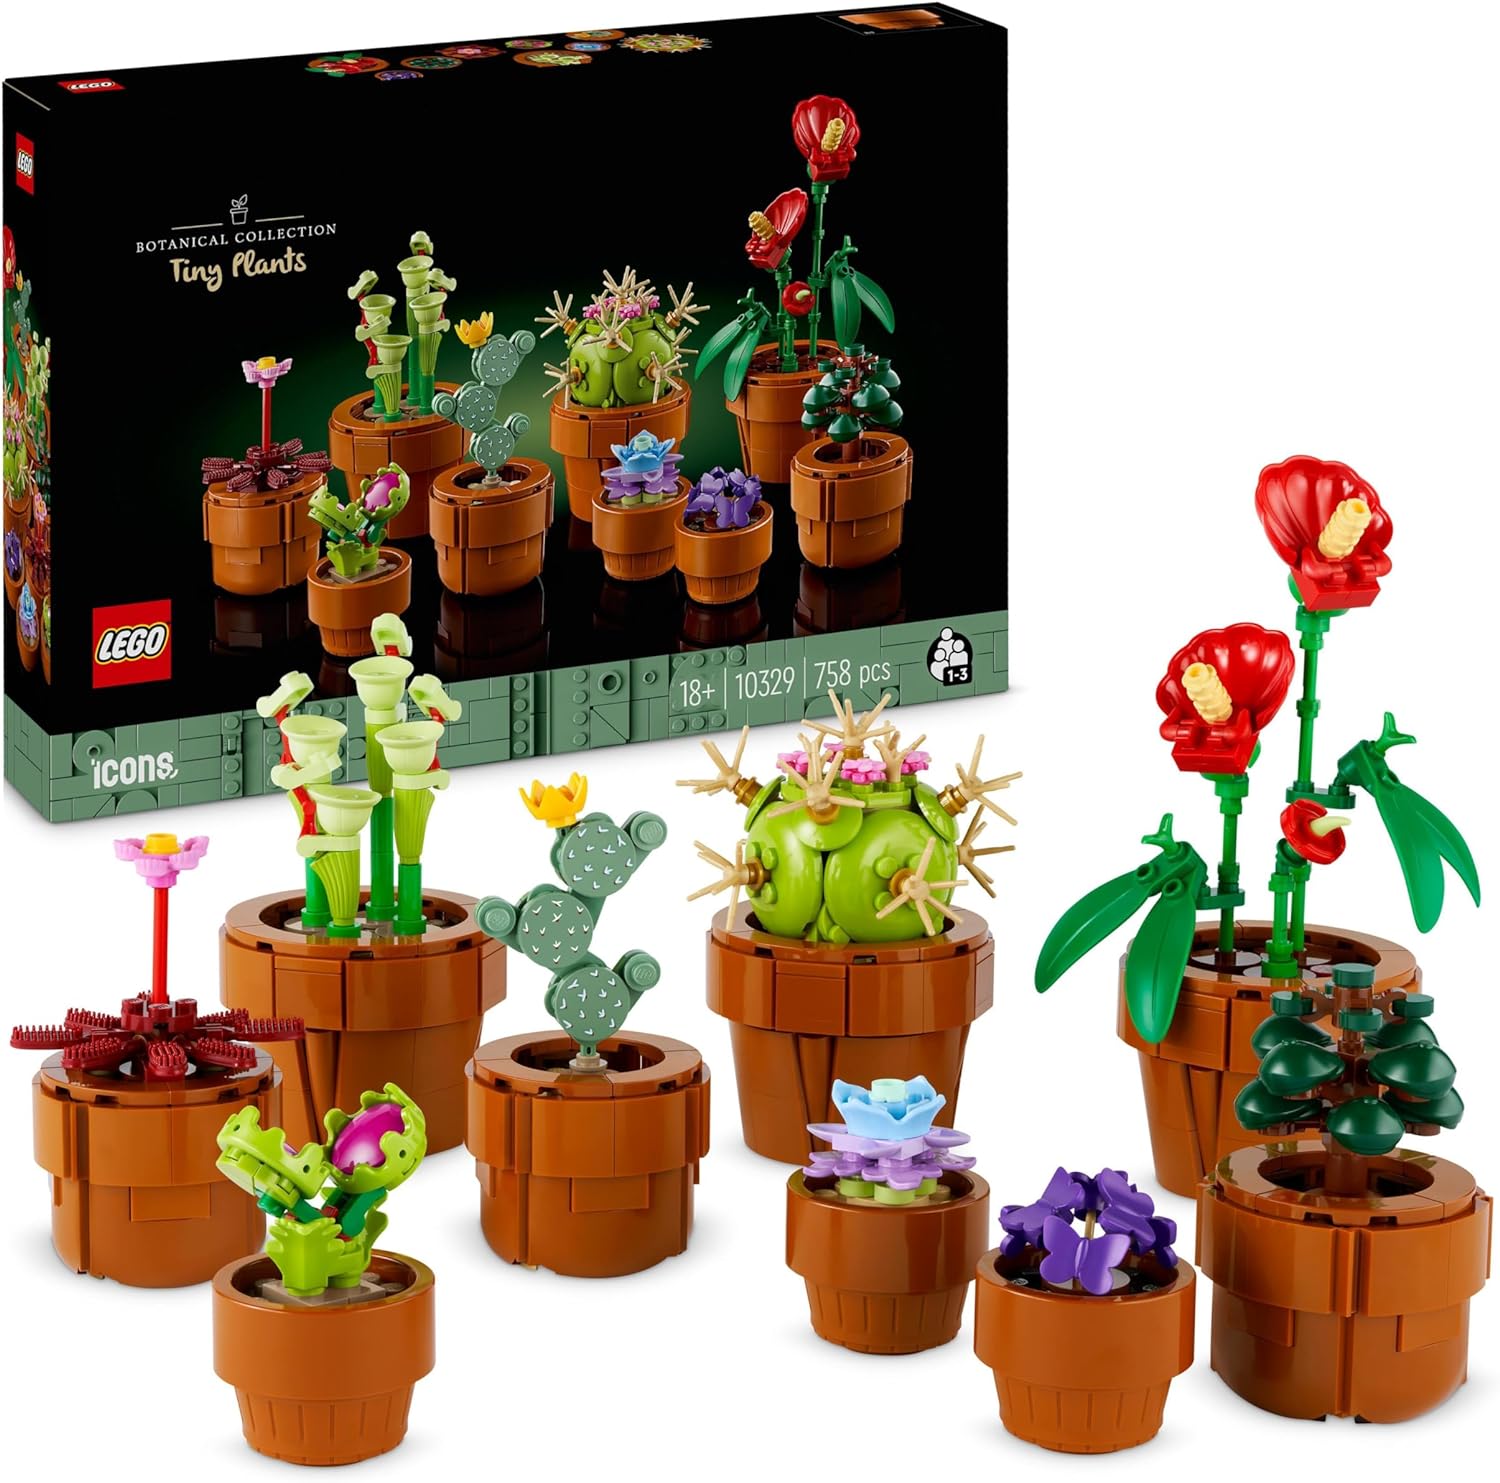 LEGO 10329 - Icons Piantine, Set Collezione Botanica con Fiori Artificiali  in Vaso Color Terracotta da Costruire